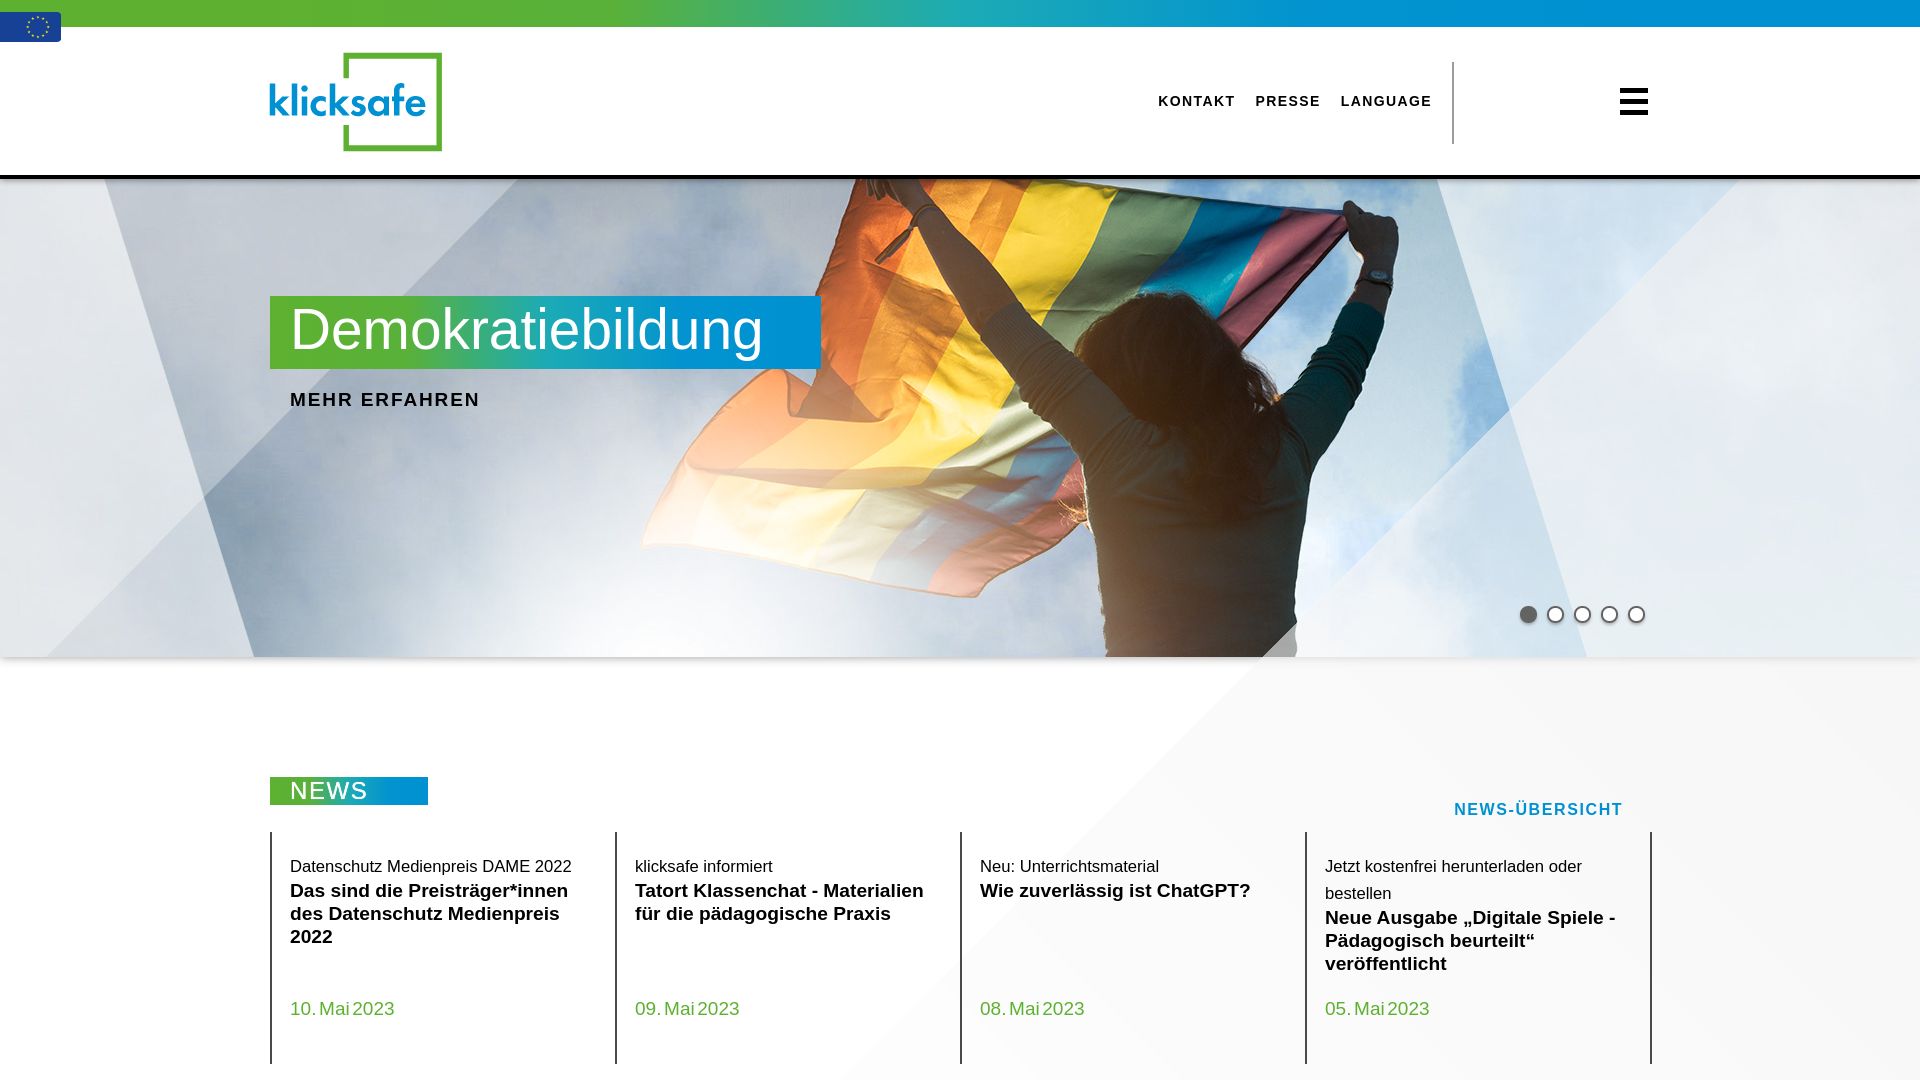 Website status klicksafe.de is   ONLINE